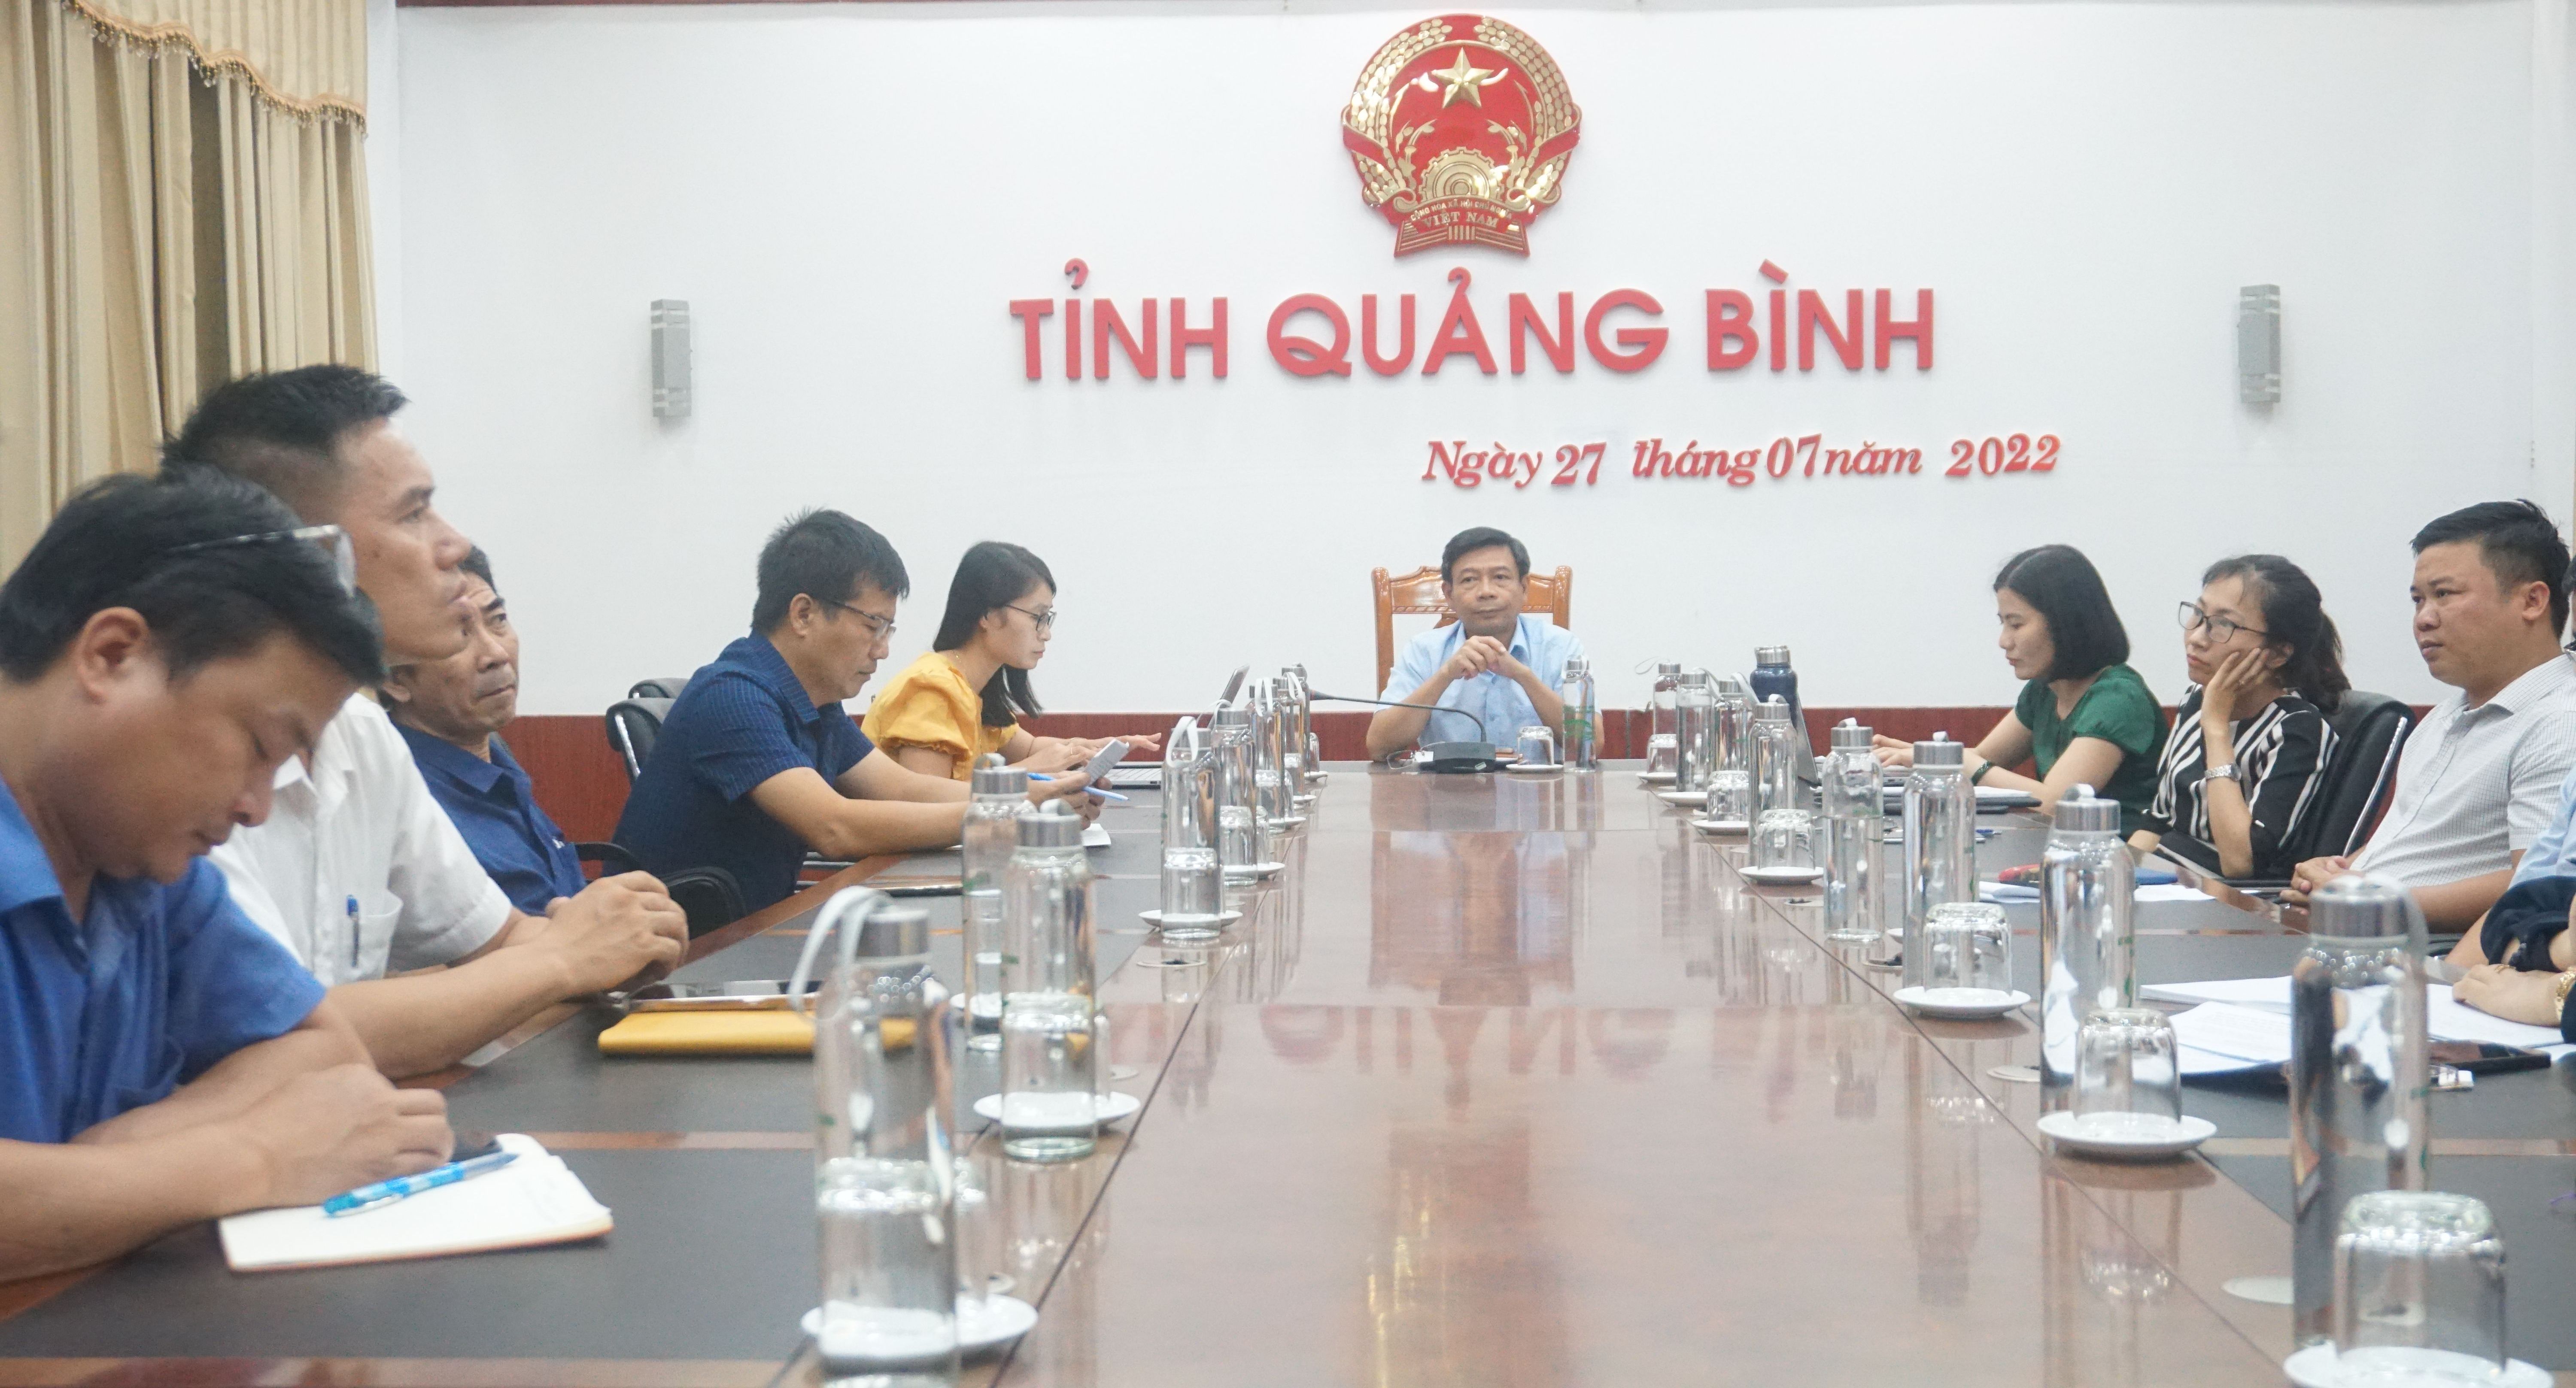  Các đại biểu tham dự hội nghị tại điểm cầu tỉnh Quảng Bình.